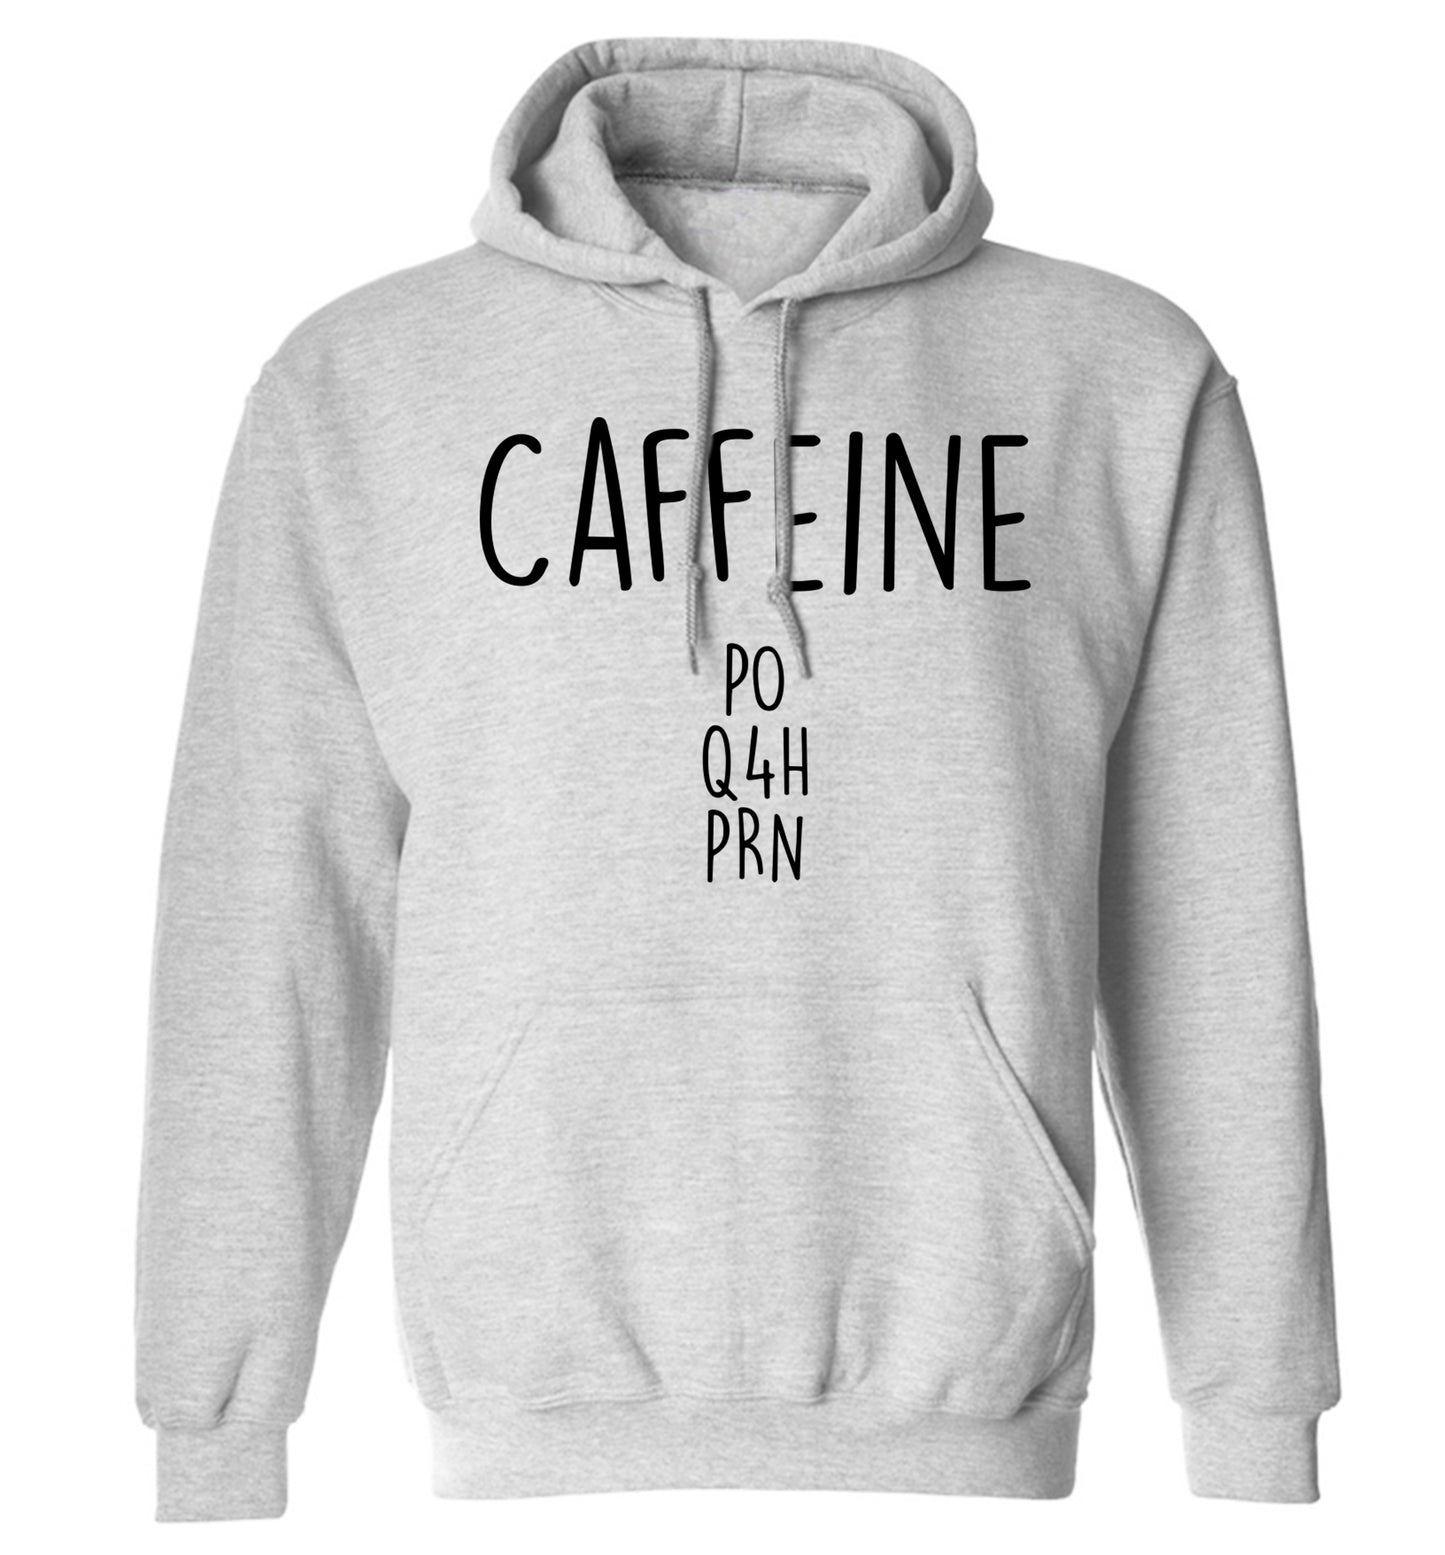 Caffeine PO Q4H PRN adults unisex grey hoodie 2XL